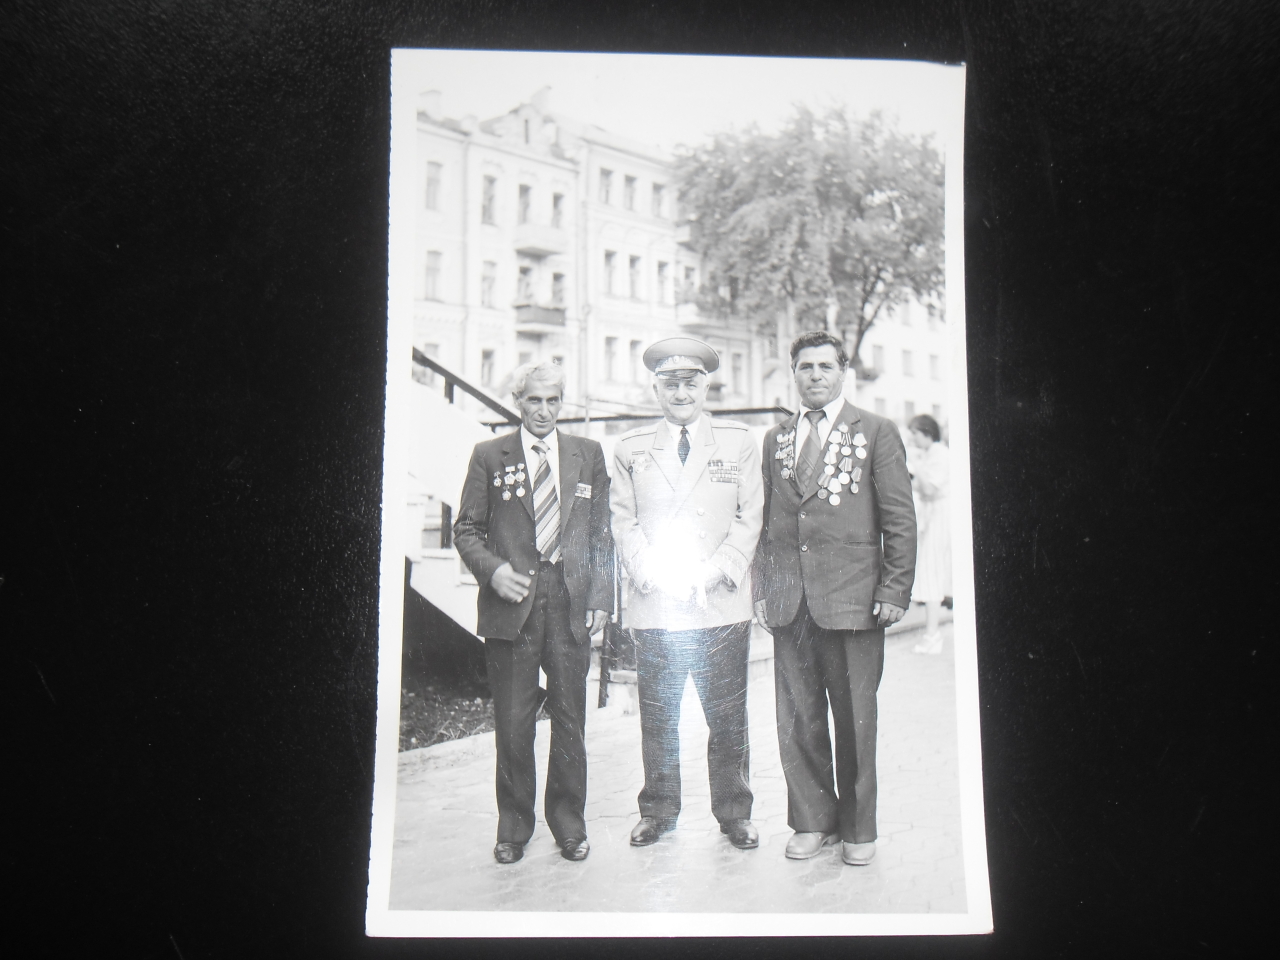   Խմբանկար՝ Ավետիք Գևորգի Վանեցյանի  (Հայրենական պատերազմի մասնակից)  